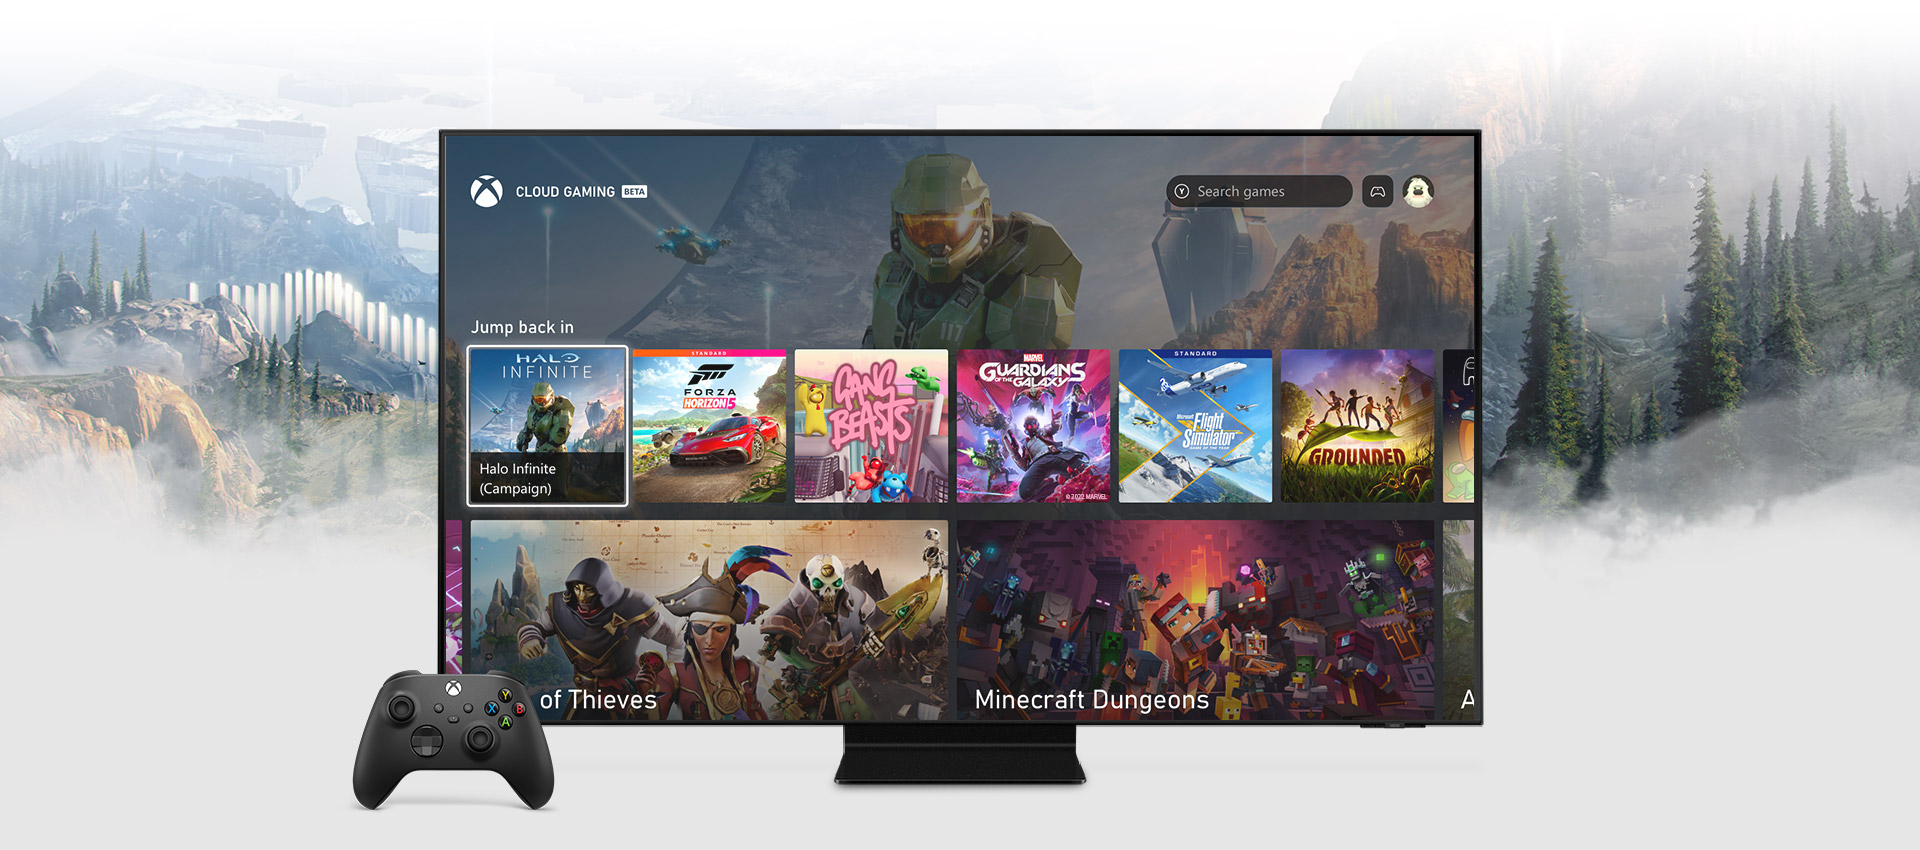 Xbox-app startside på et Samsung smart-TV